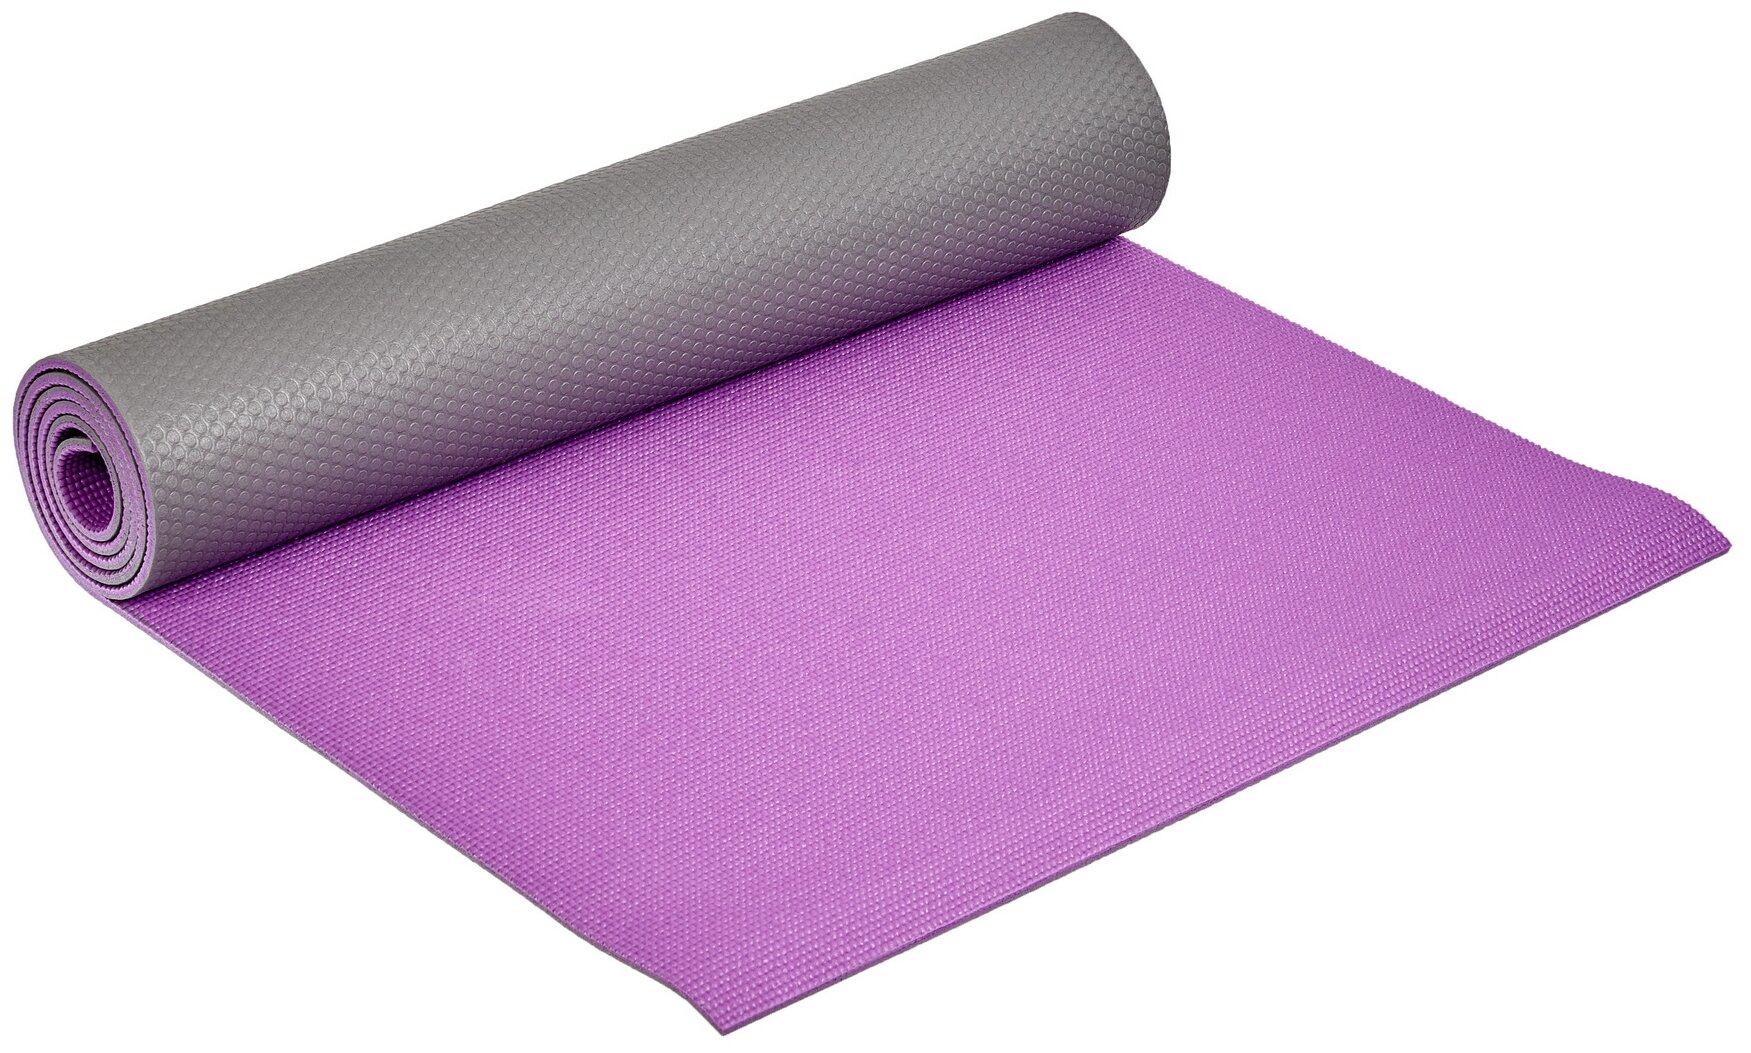 Коврик для йоги и фитнеса Bradex SF 0690 для йоги и фитнеса, 173*61*0,6 см, двухслойный фиолетовый